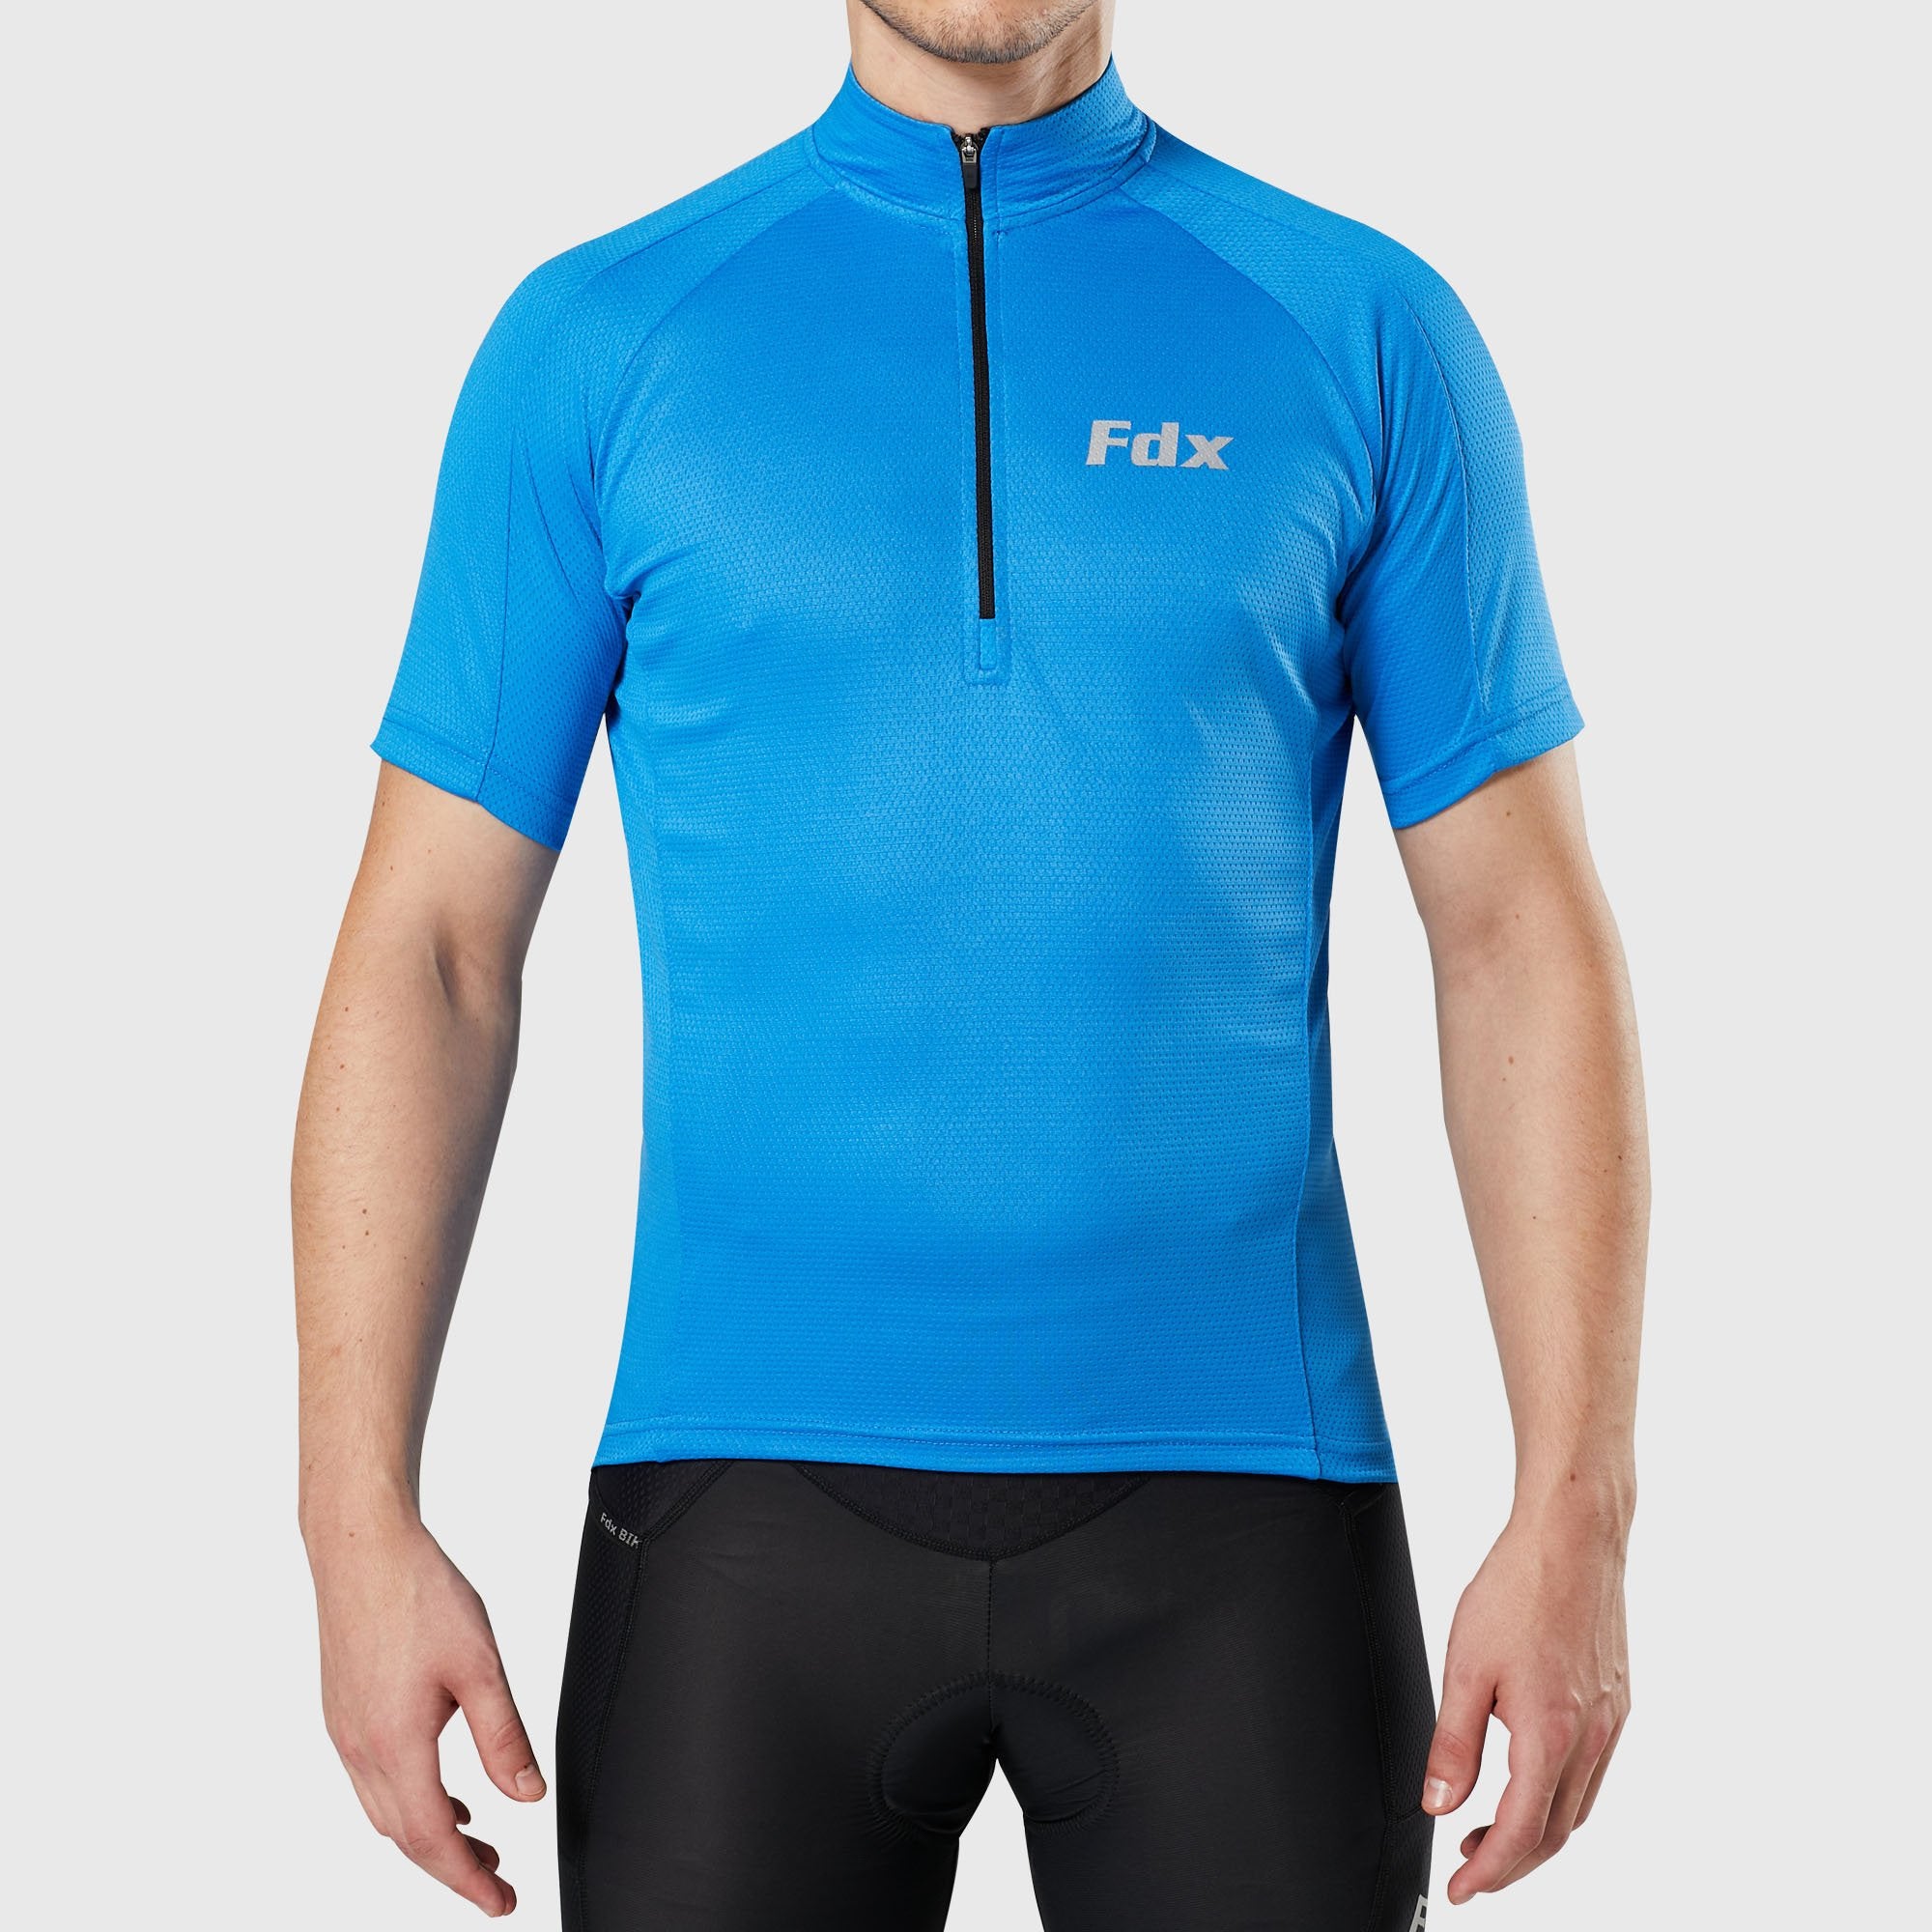 Fdx Mens Blue Short Sleeve Cycling Jersey for Summer Best Road Bike Wear Top Light Weight, Full Zipper, Pockets & Hi-viz Reflectors - Pace